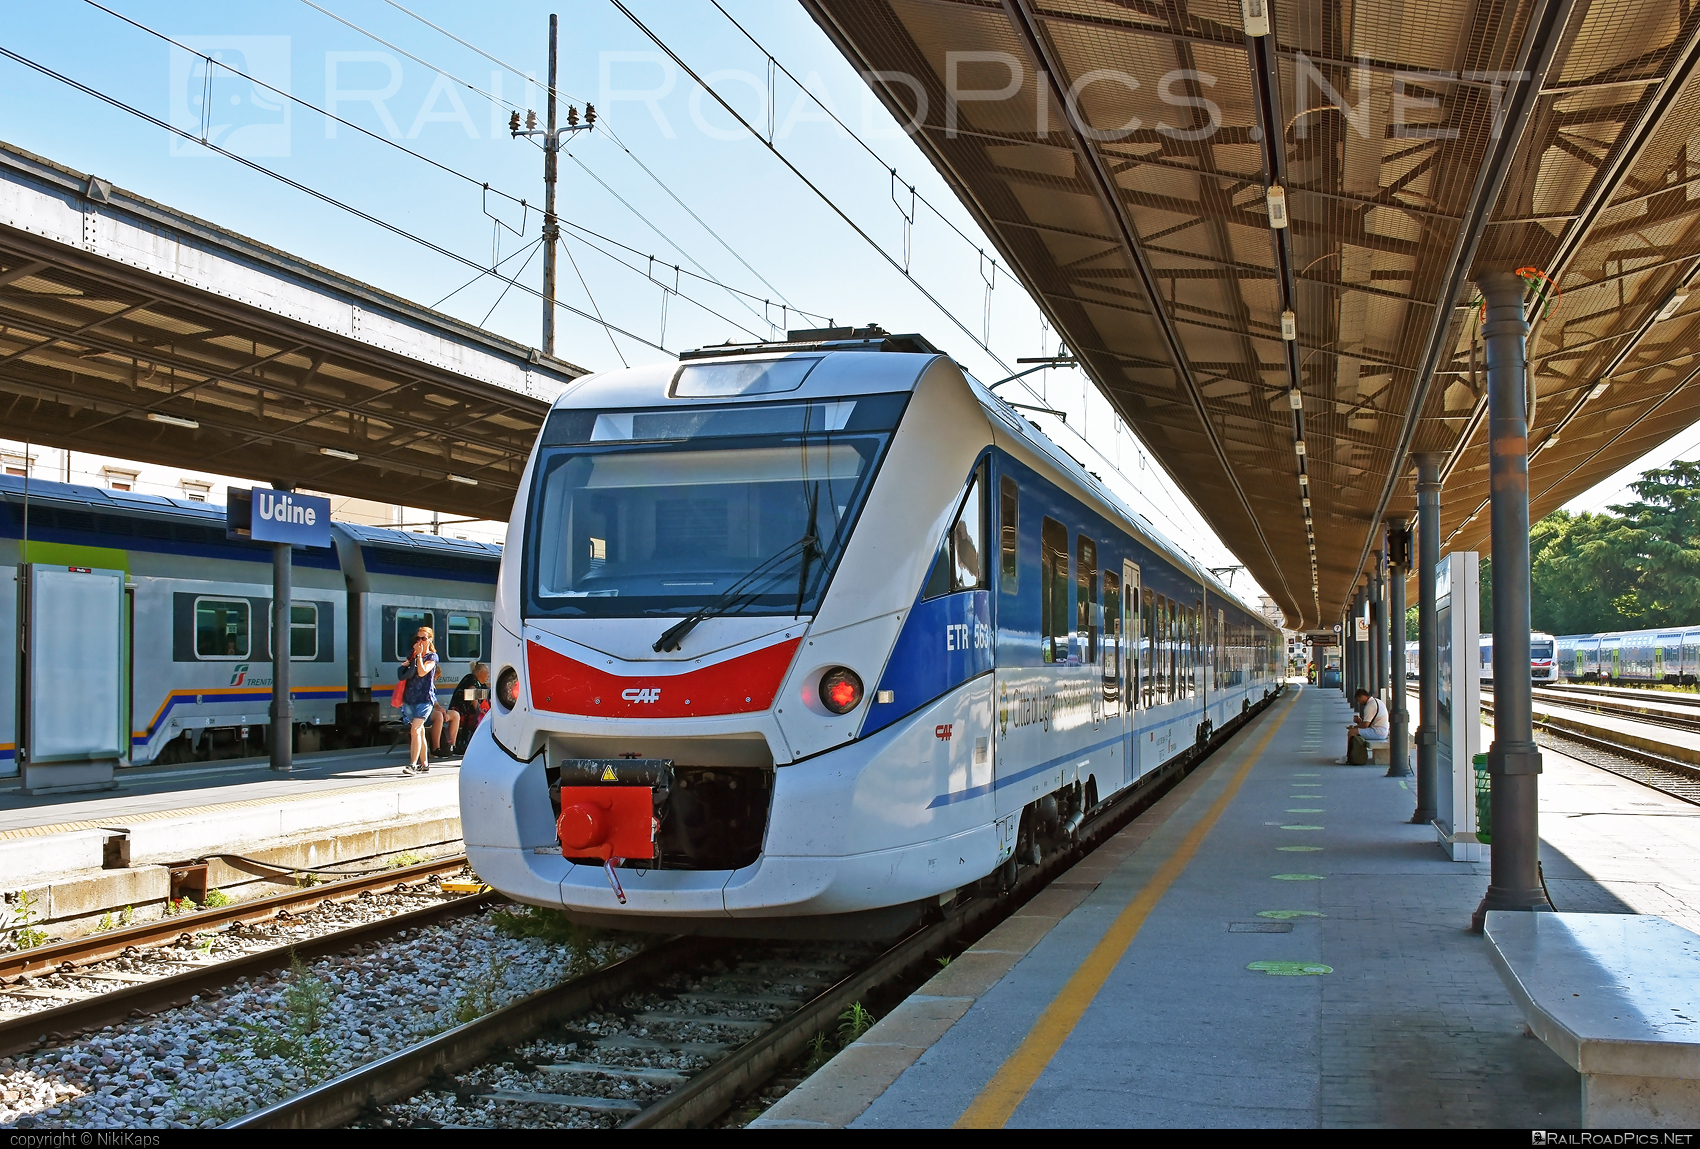 CAF Civity - 563 506-6 operated by Trenitalia S.p.A. #ConstruccionesYAuxiliarDeFerrocarriles #caf #cafCivity #civity #ferroviedellostato #fs #fsitaliane #trenitalia #trenitaliaspa